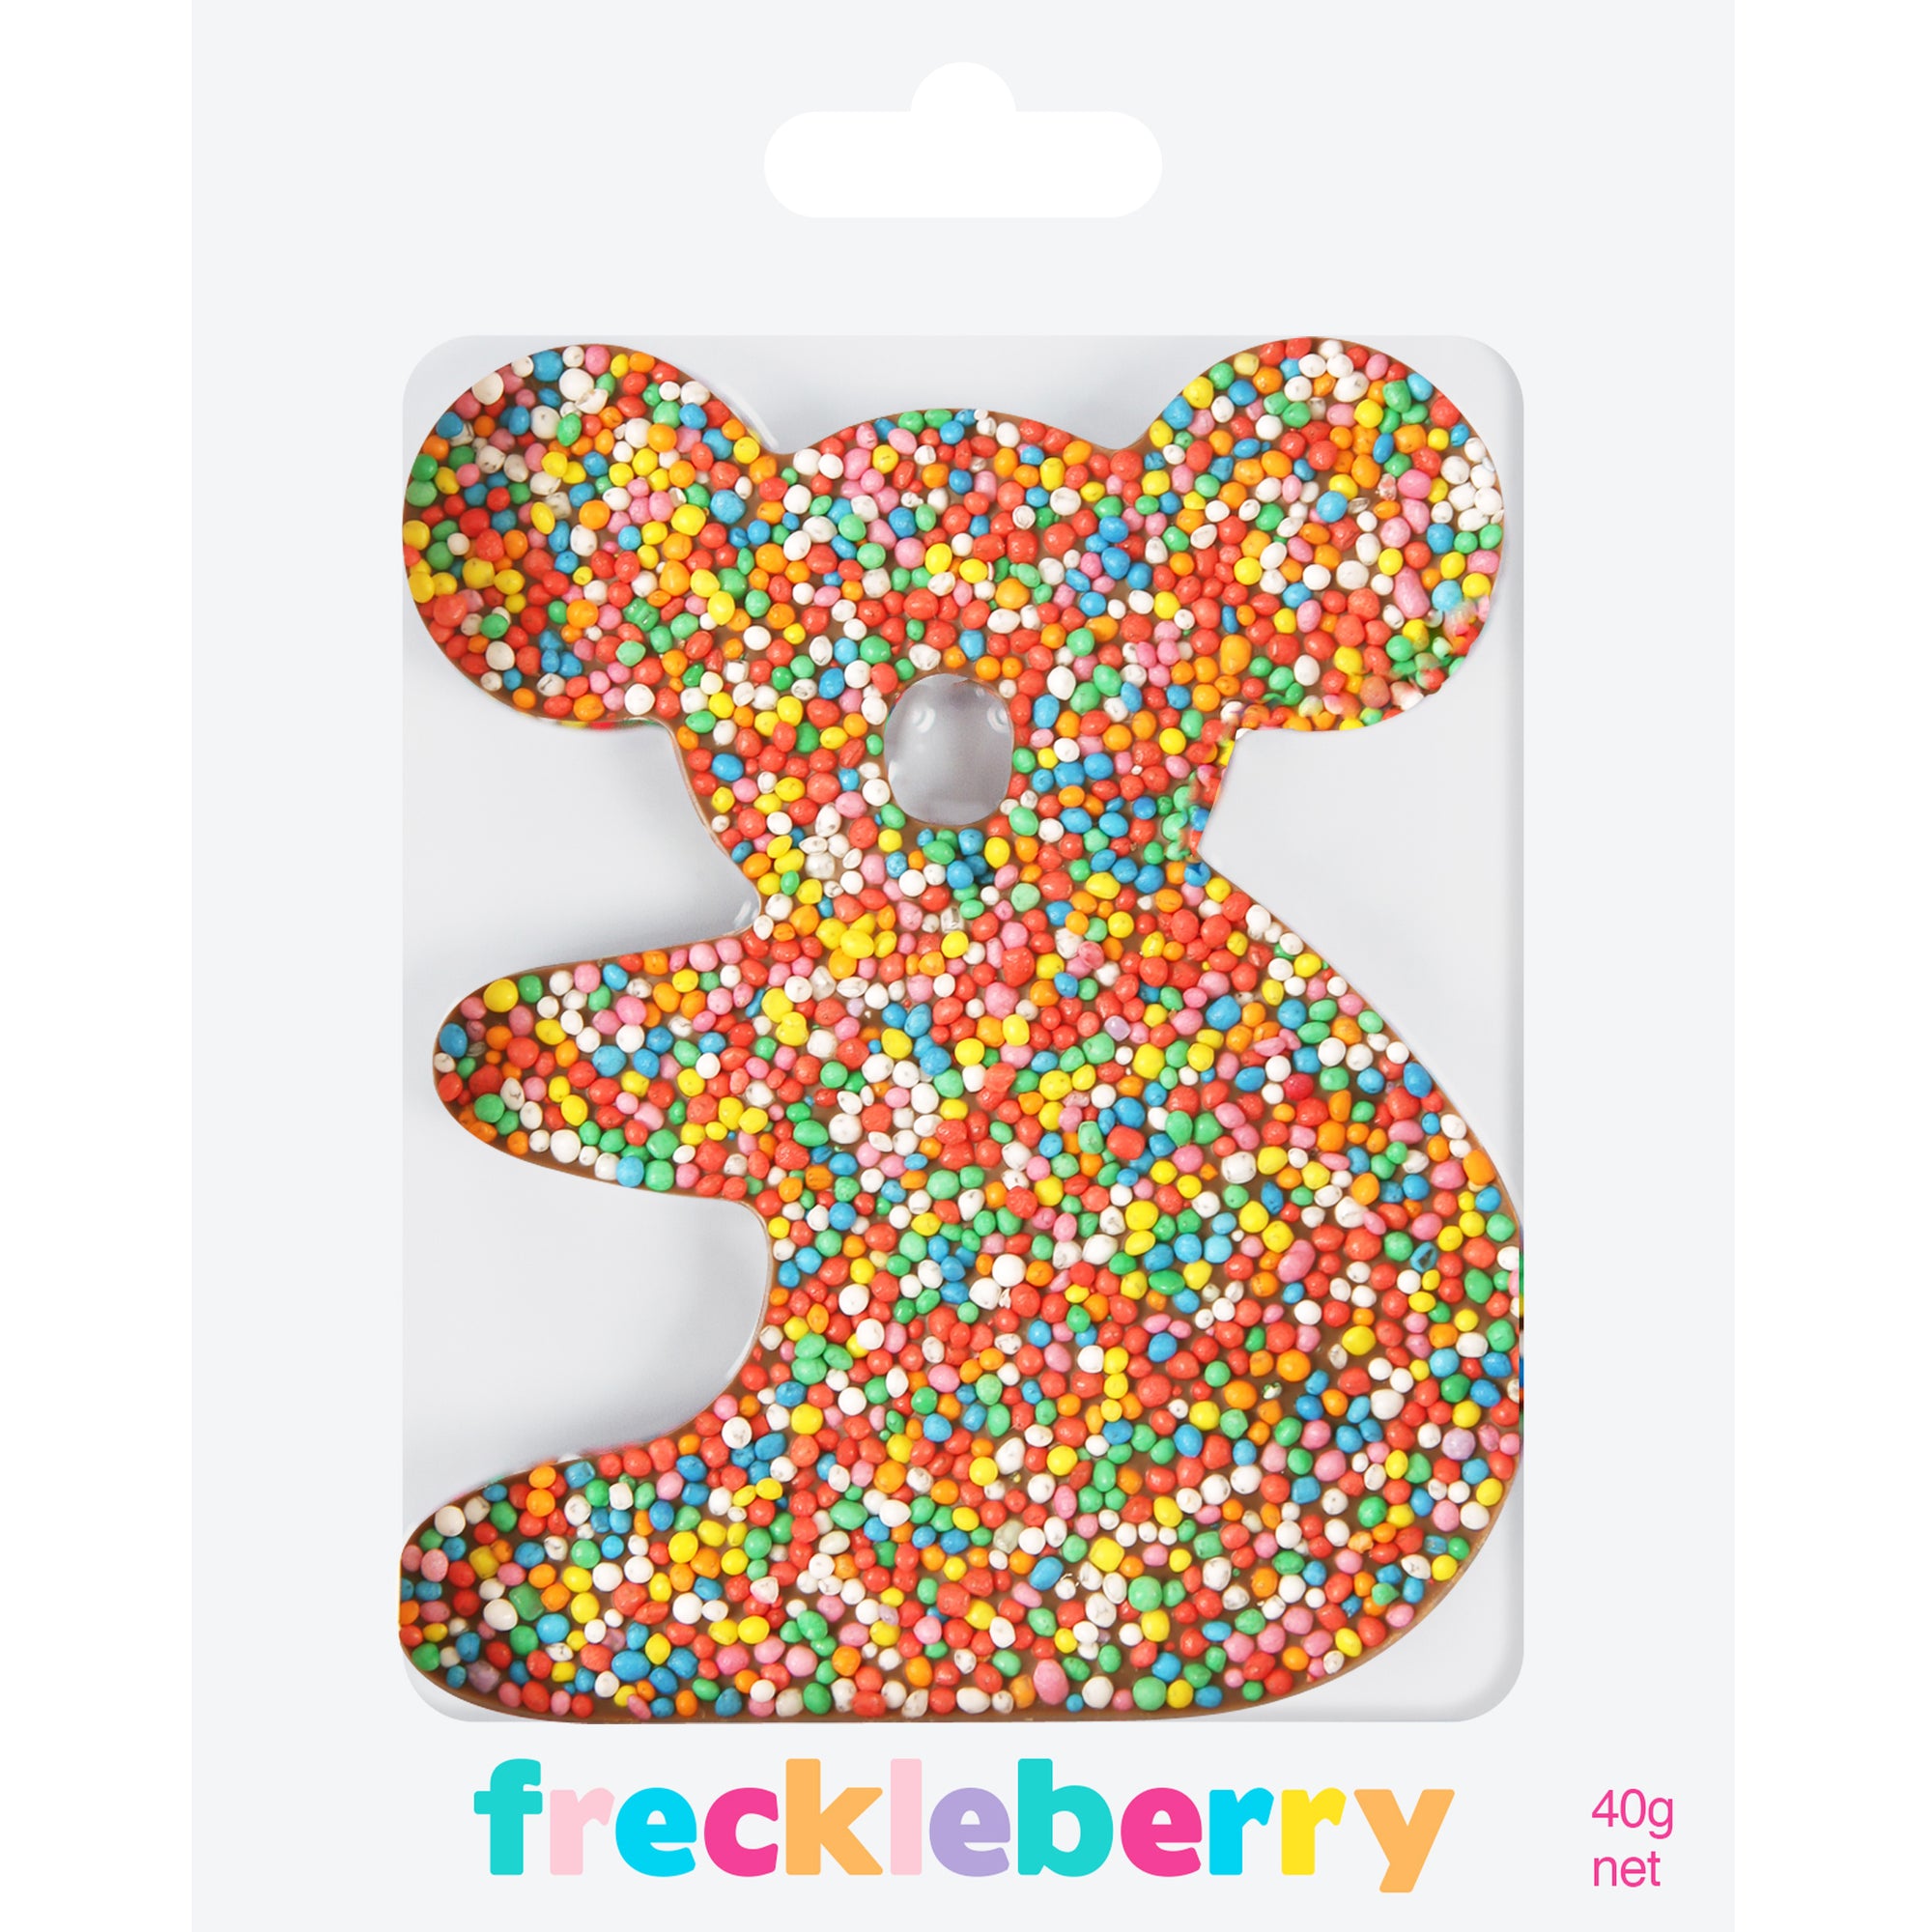 Freckleberry - Freckle Koala